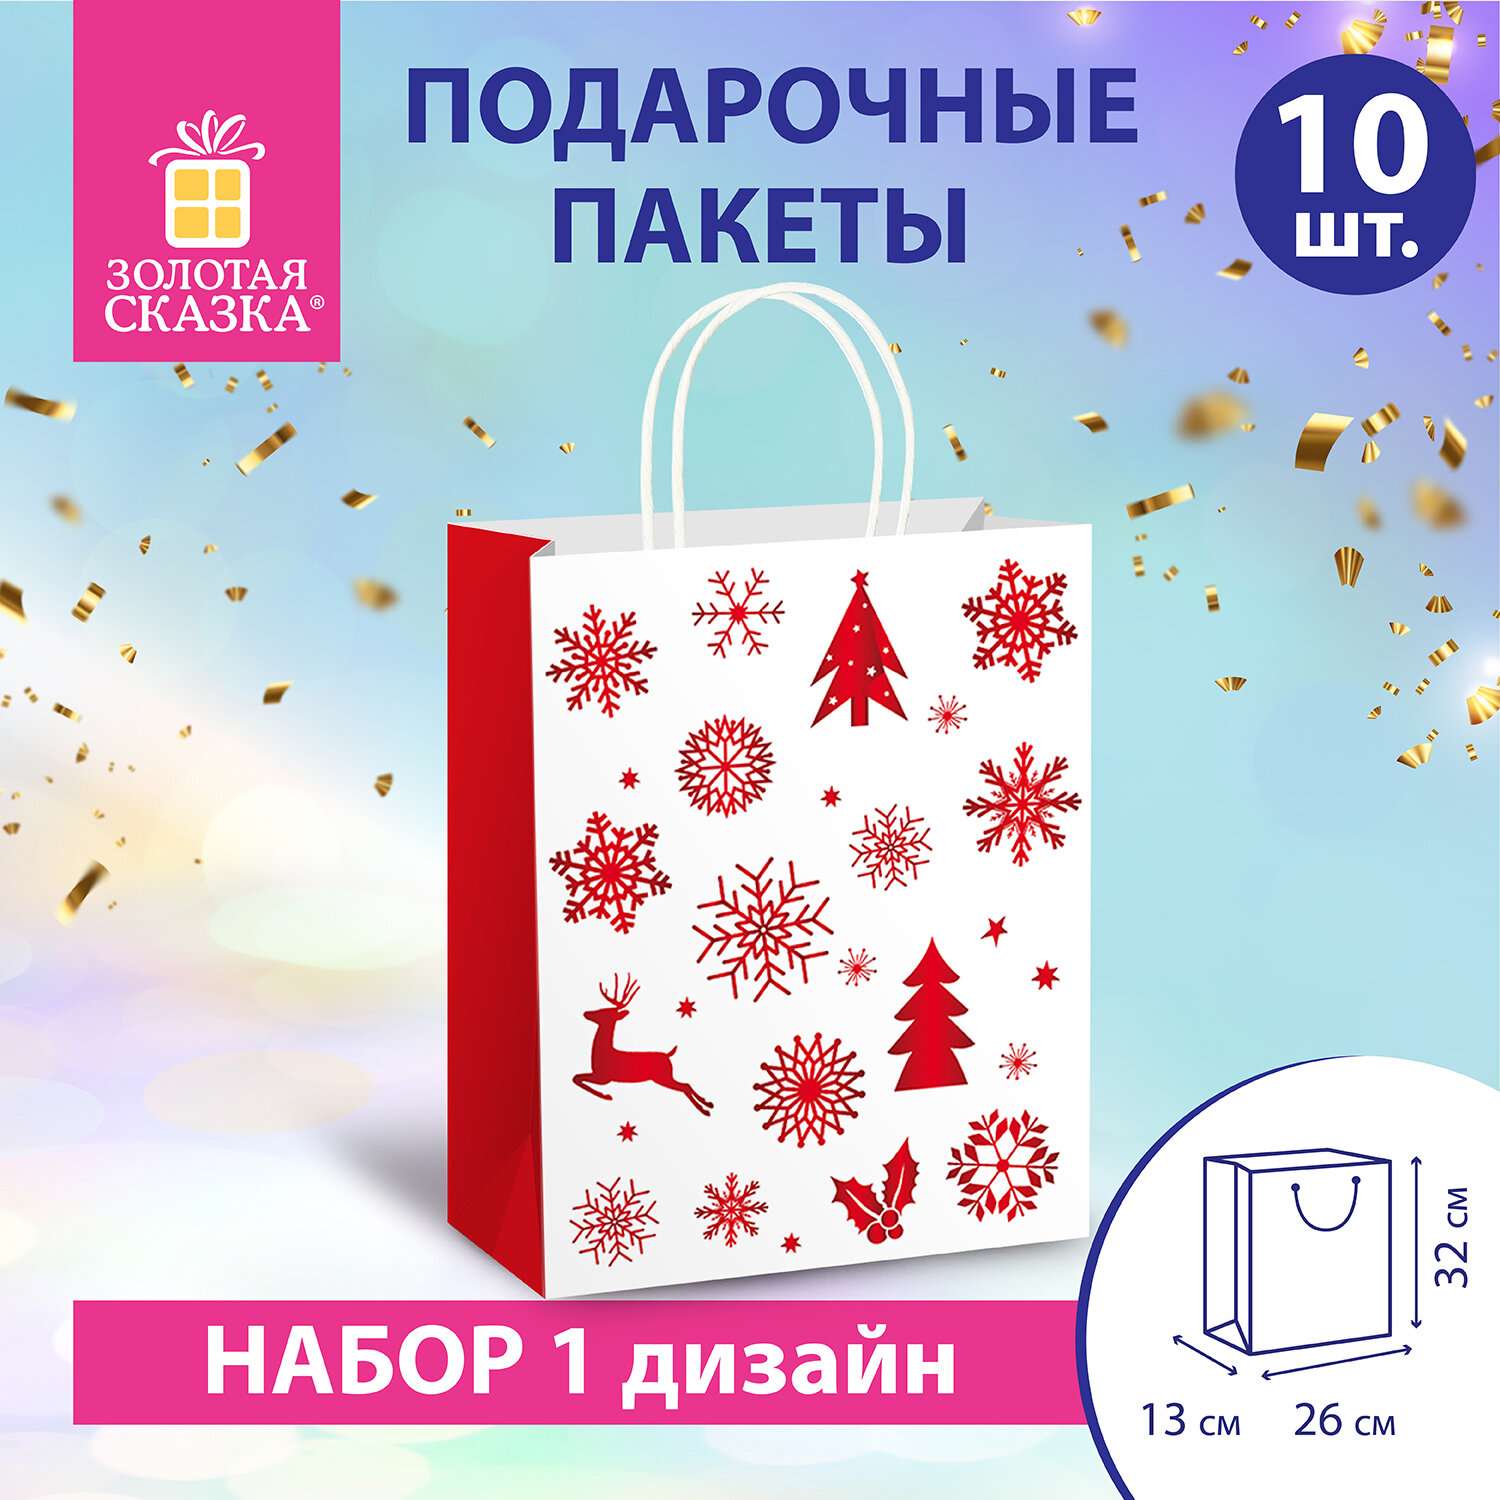 Подарочные пакеты Золотая сказка новогодние для упаковки подарков - фото 1